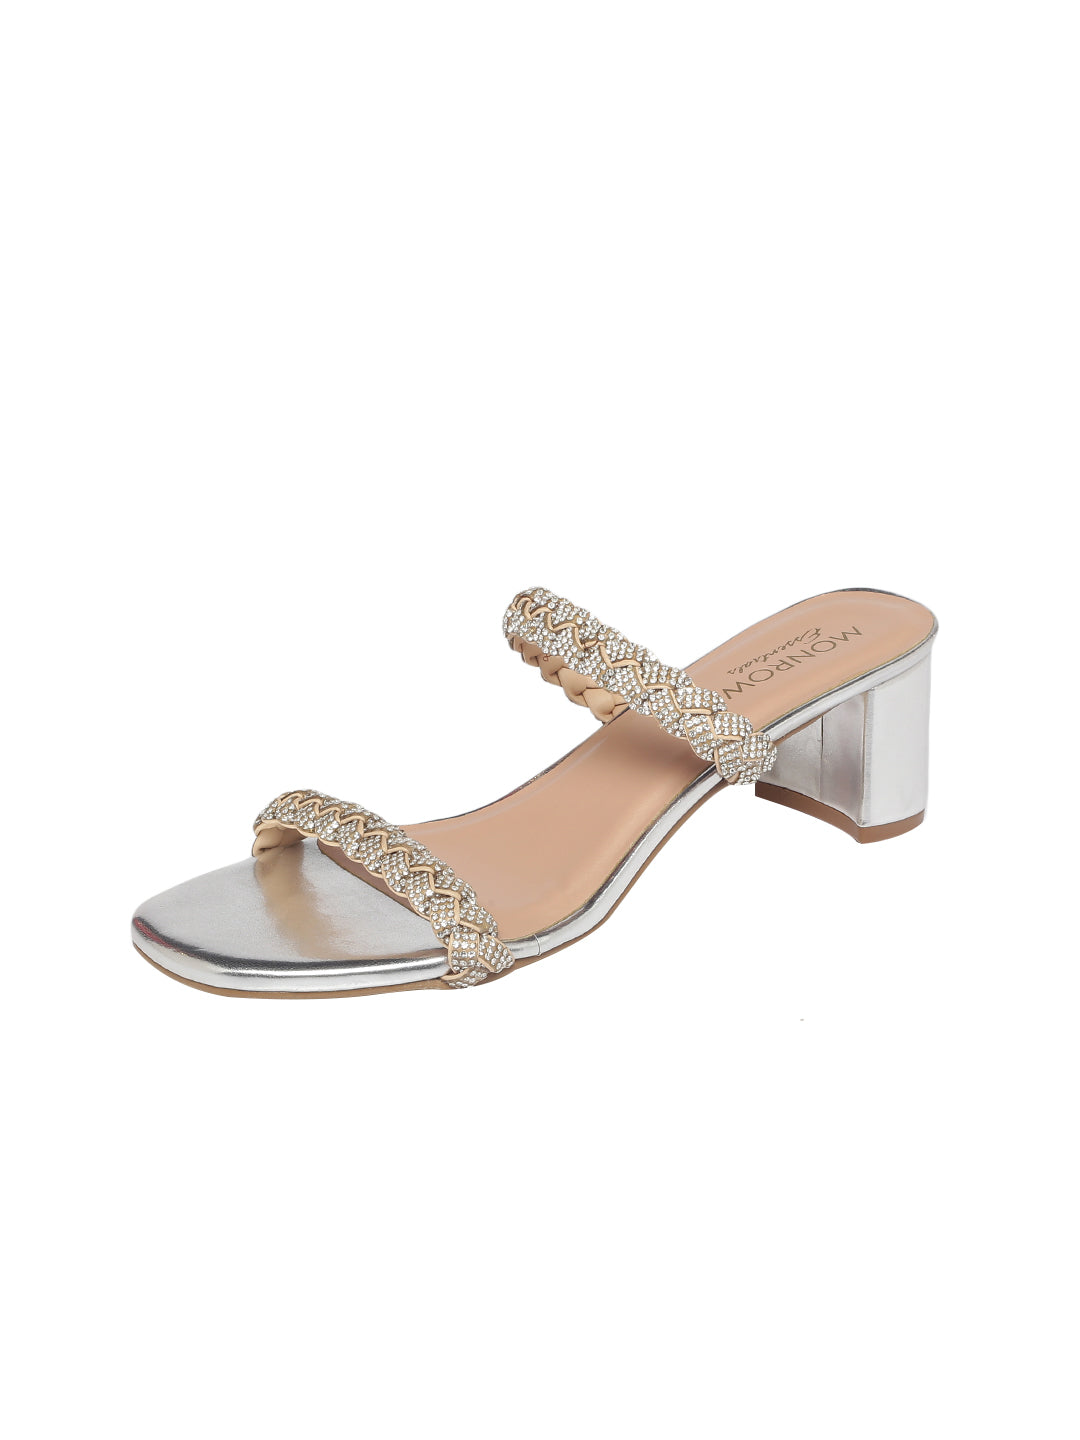 Glamorous Silver Low Block Heel Sandals - Glamorous